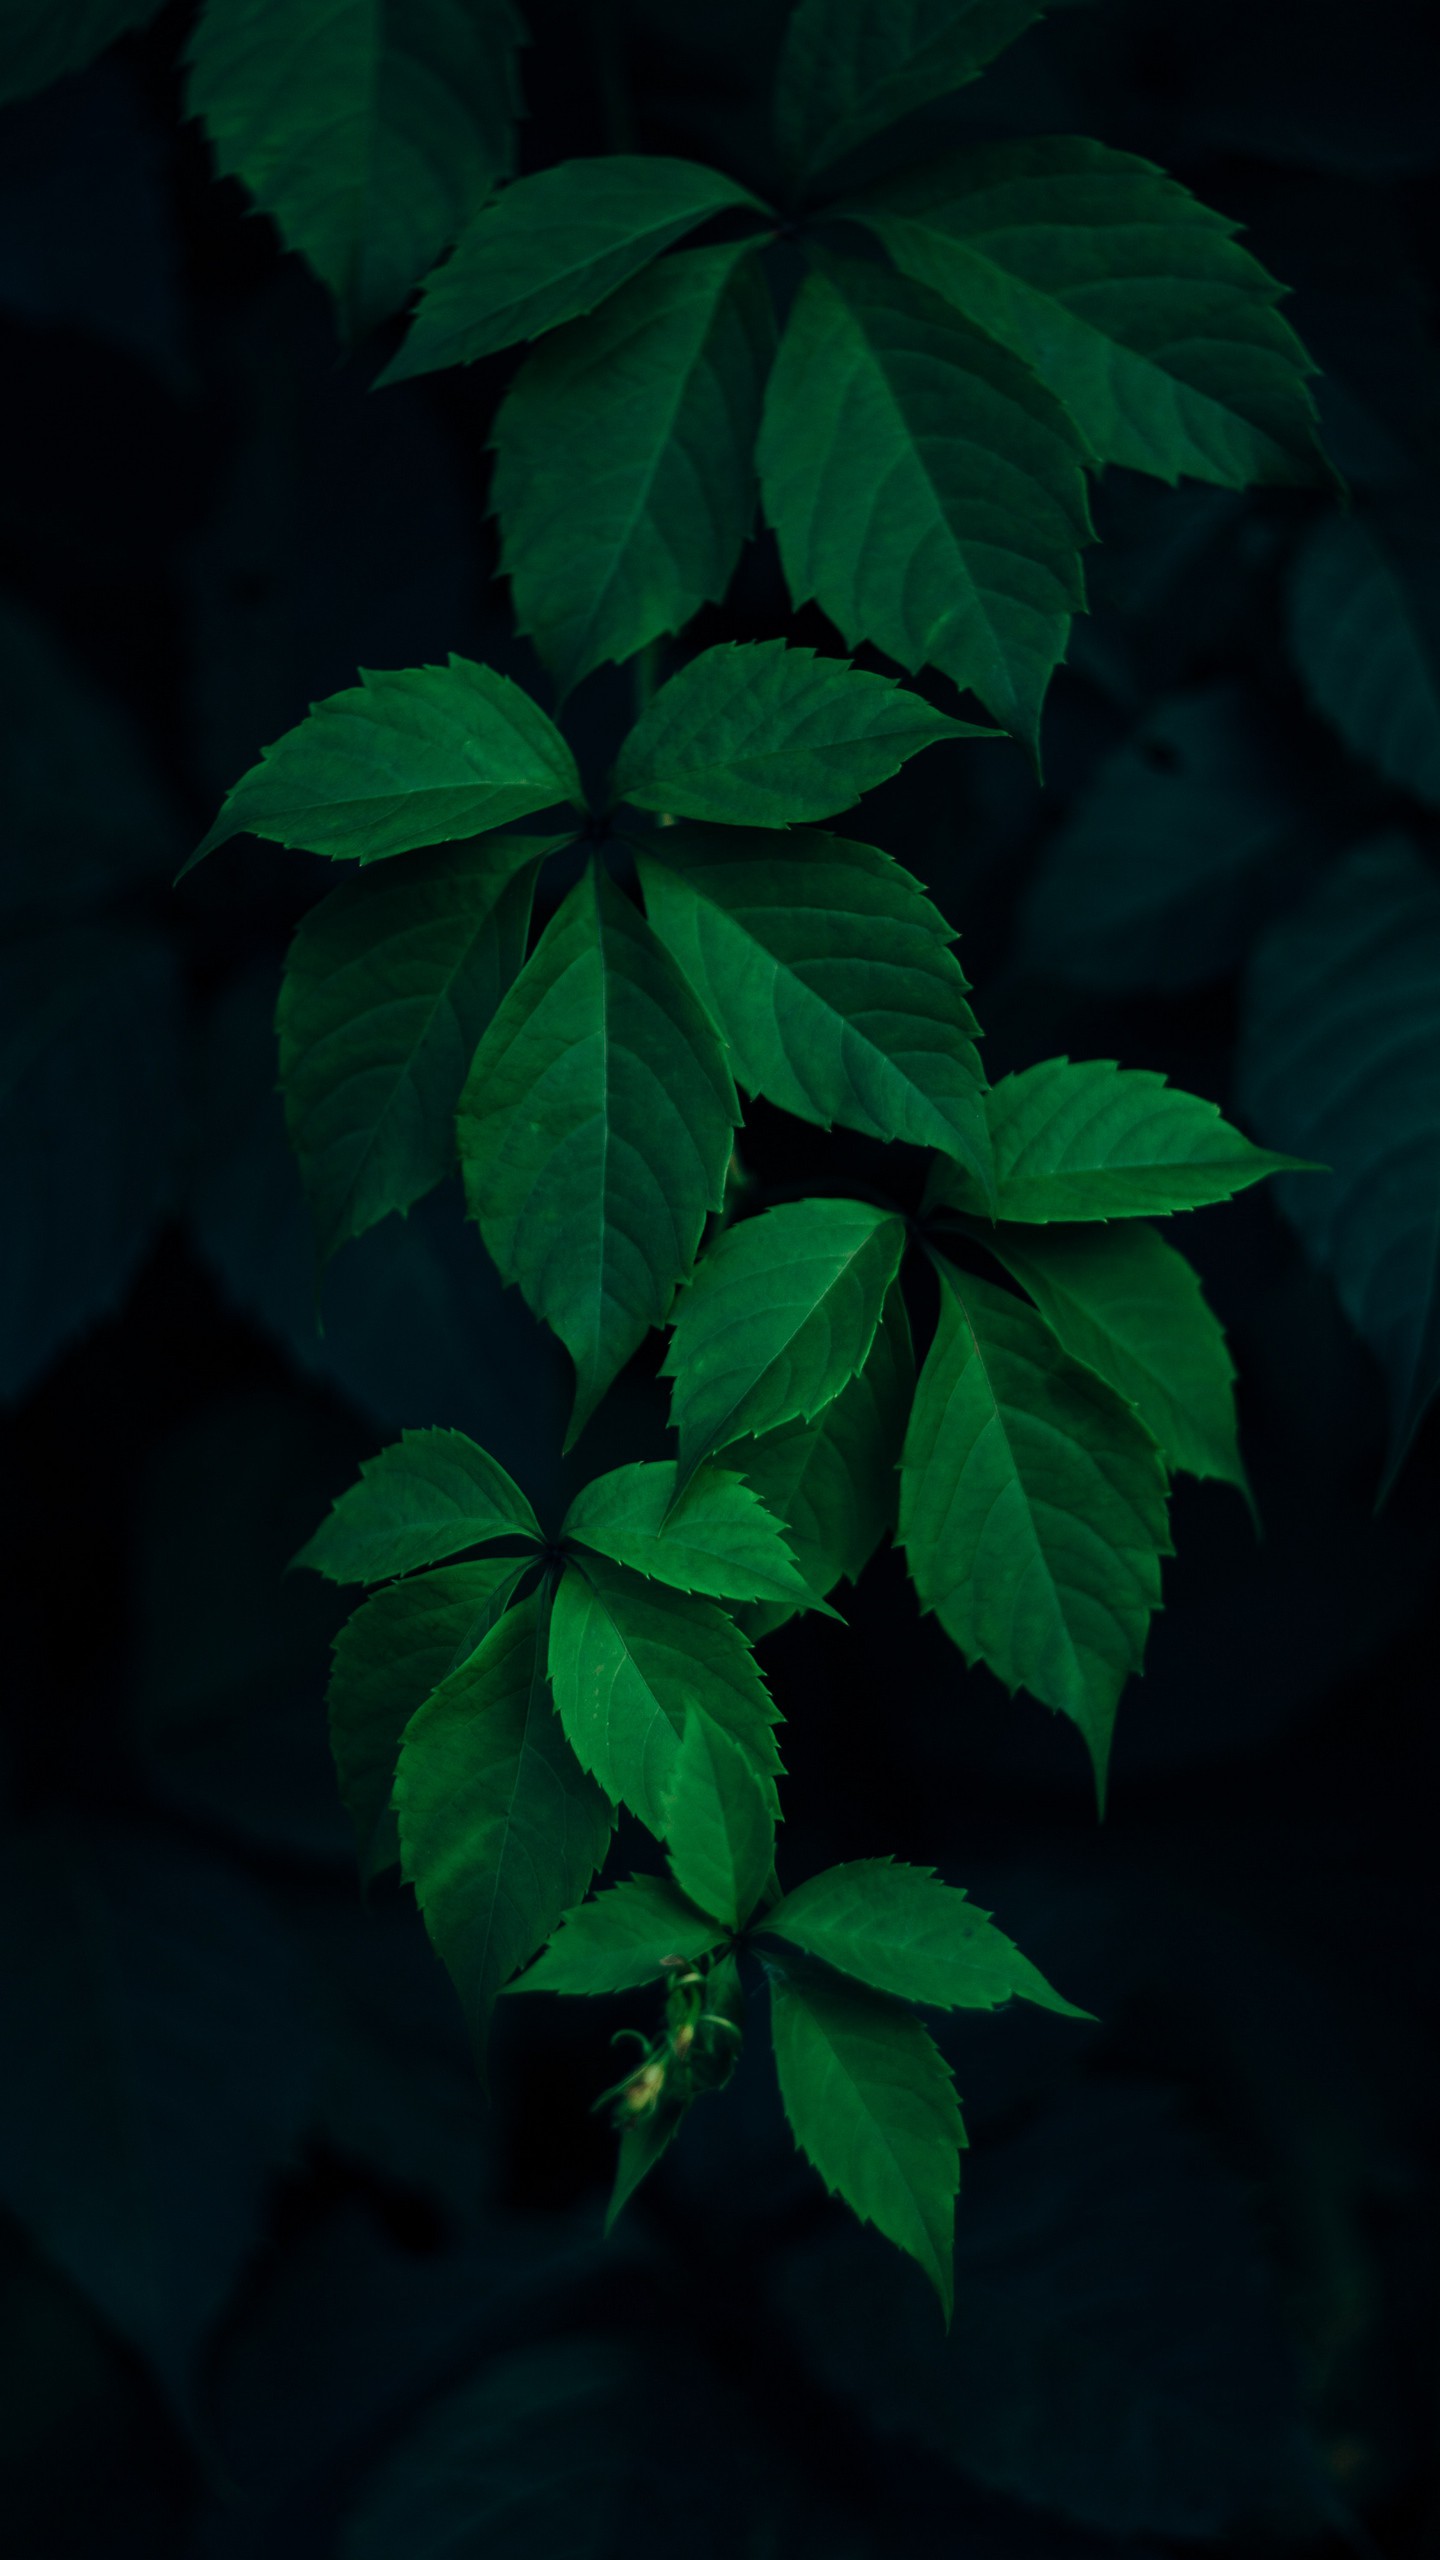 Обои на телефон листья, зеленый, ветки, темный фон - скачать бесплатно в  высоком качестве из категории Природа